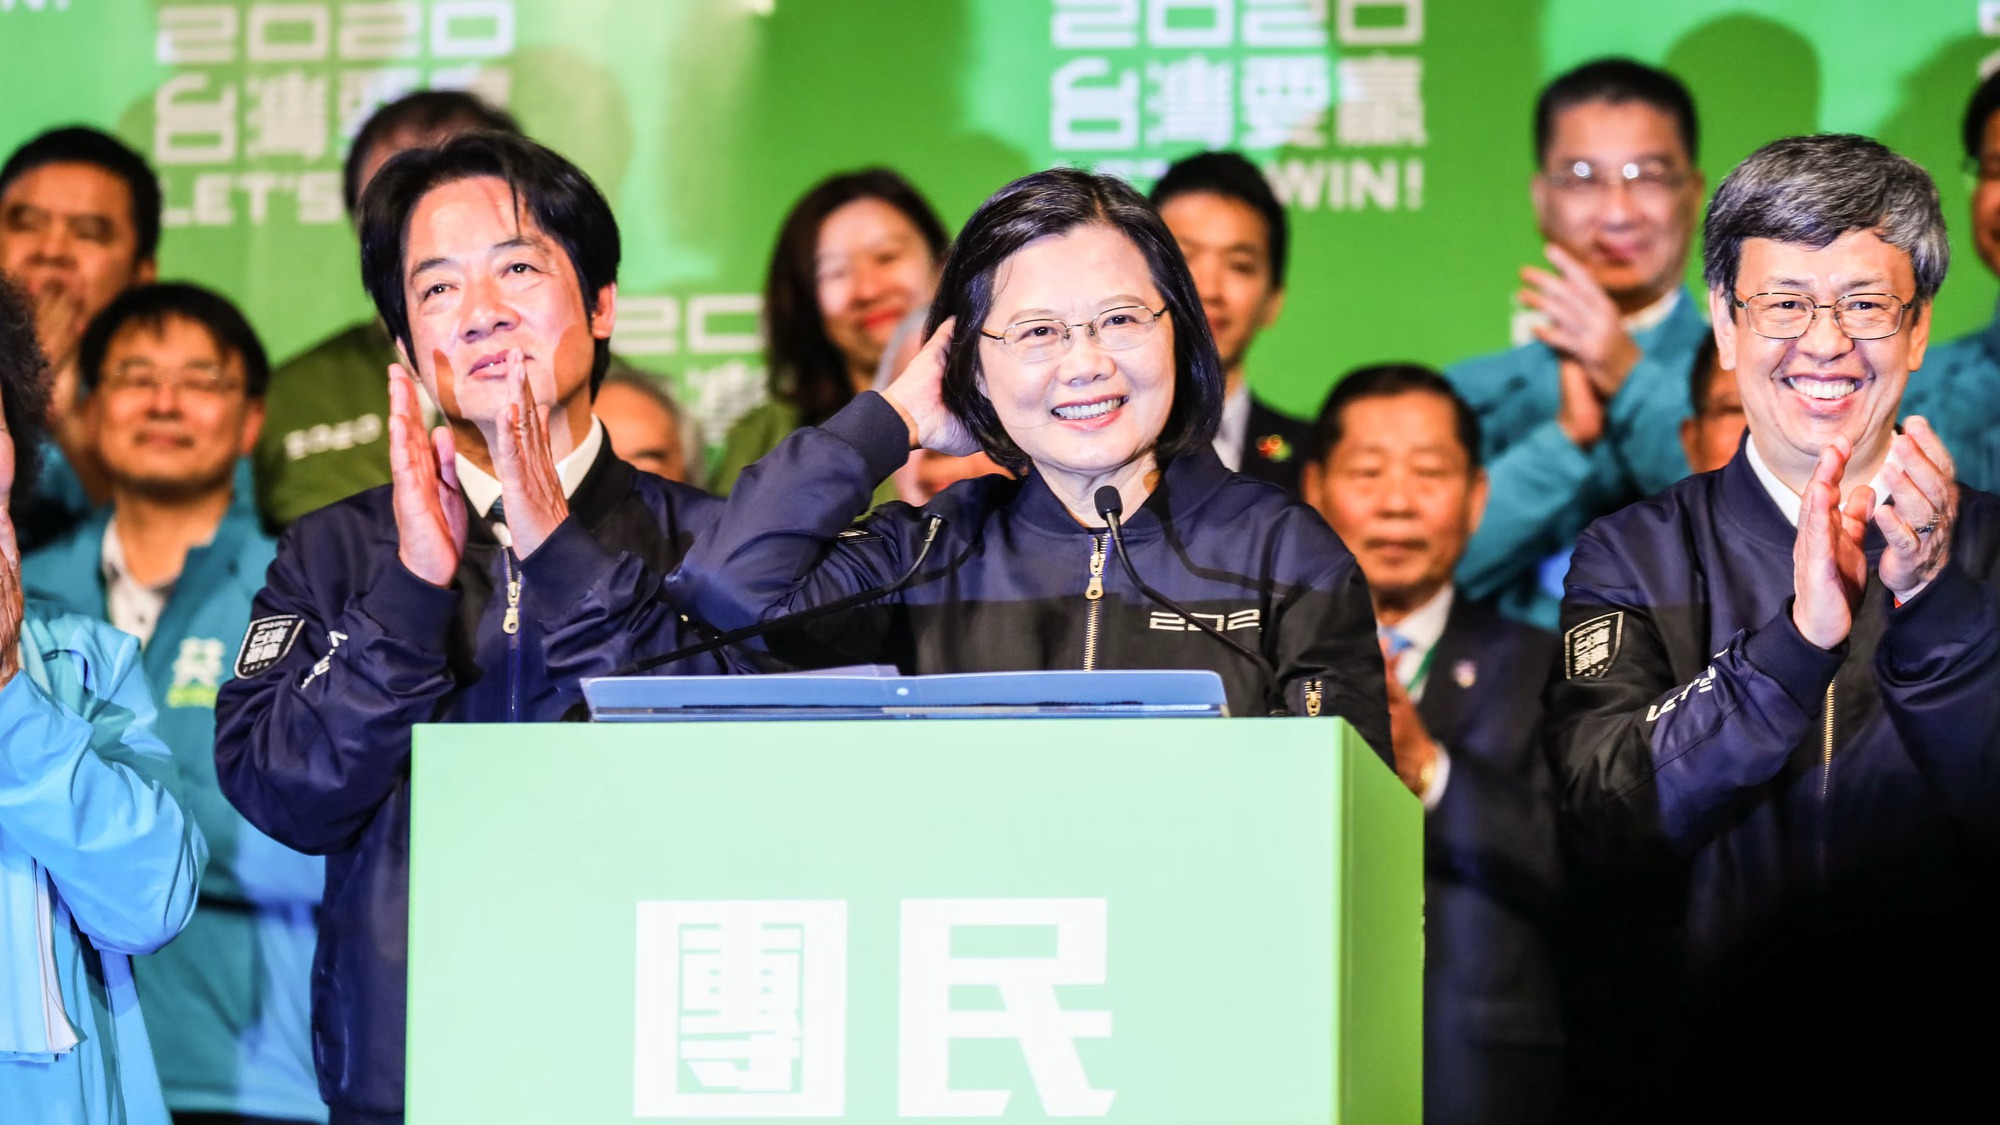 Nhà lãnh đạo Đài Loan Thái Anh Văn ăn mừng tái đắc cử tại Đài loan vào ngày 11 tháng 1 năm 2020, cho thấy một chiến dịch thông tin sai lệch rõ ràng của Trung Quốc đã không thành công trong việc ảnh hưởng đến kết quả bầu cử. (Ảnh của Akira Kodaka).